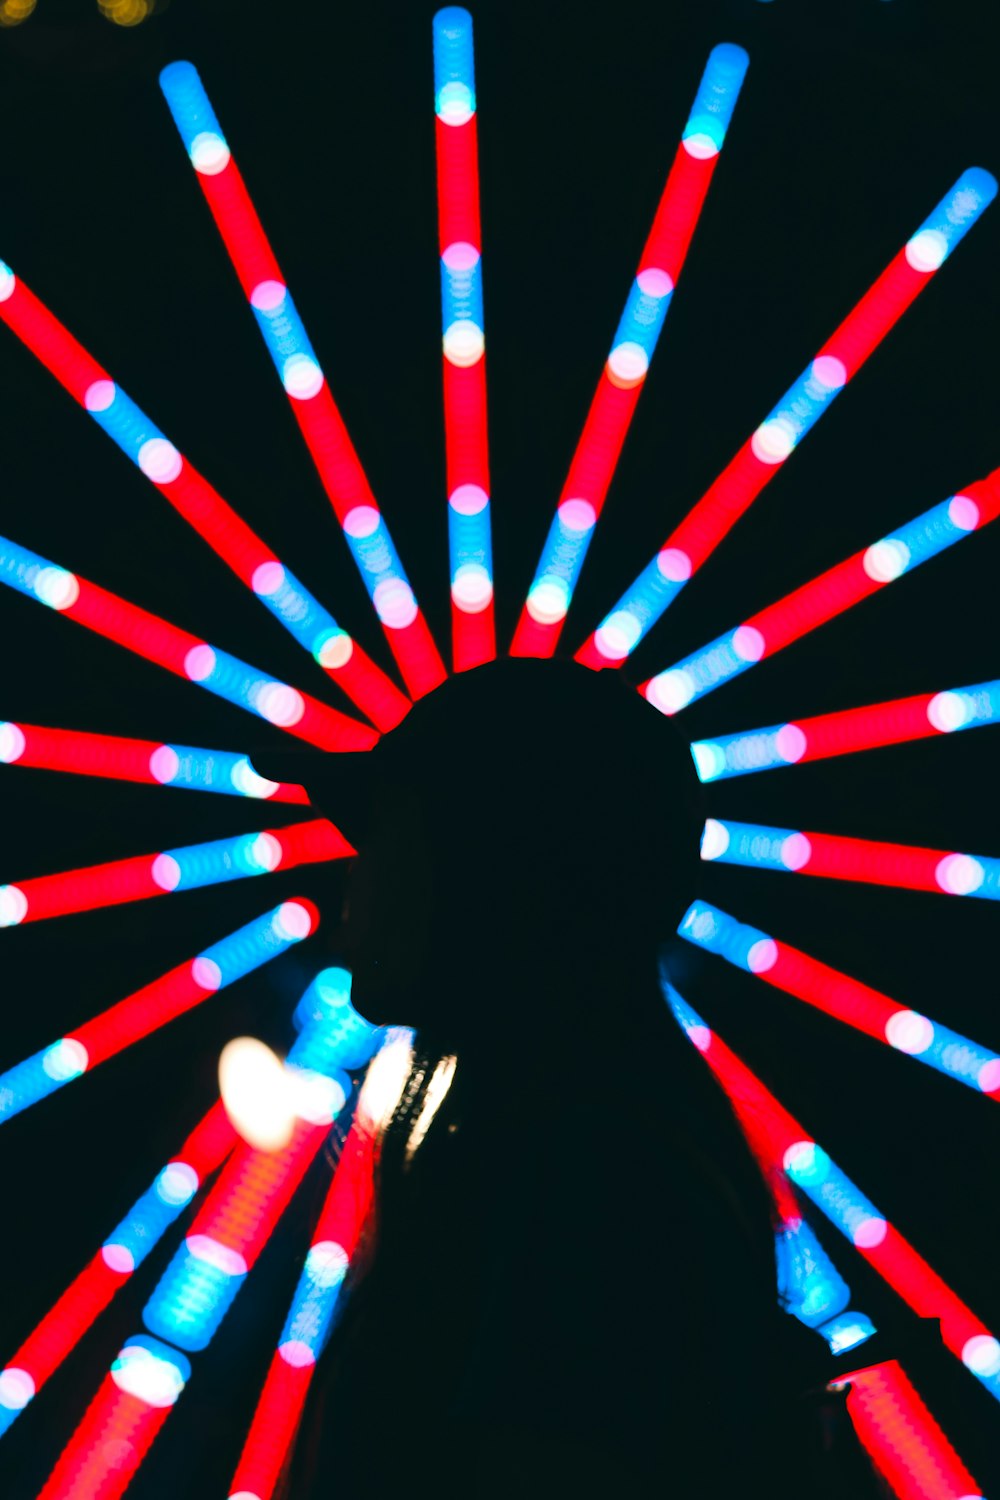 Una persona parada frente a una noria con luces rojas, blancas y azules